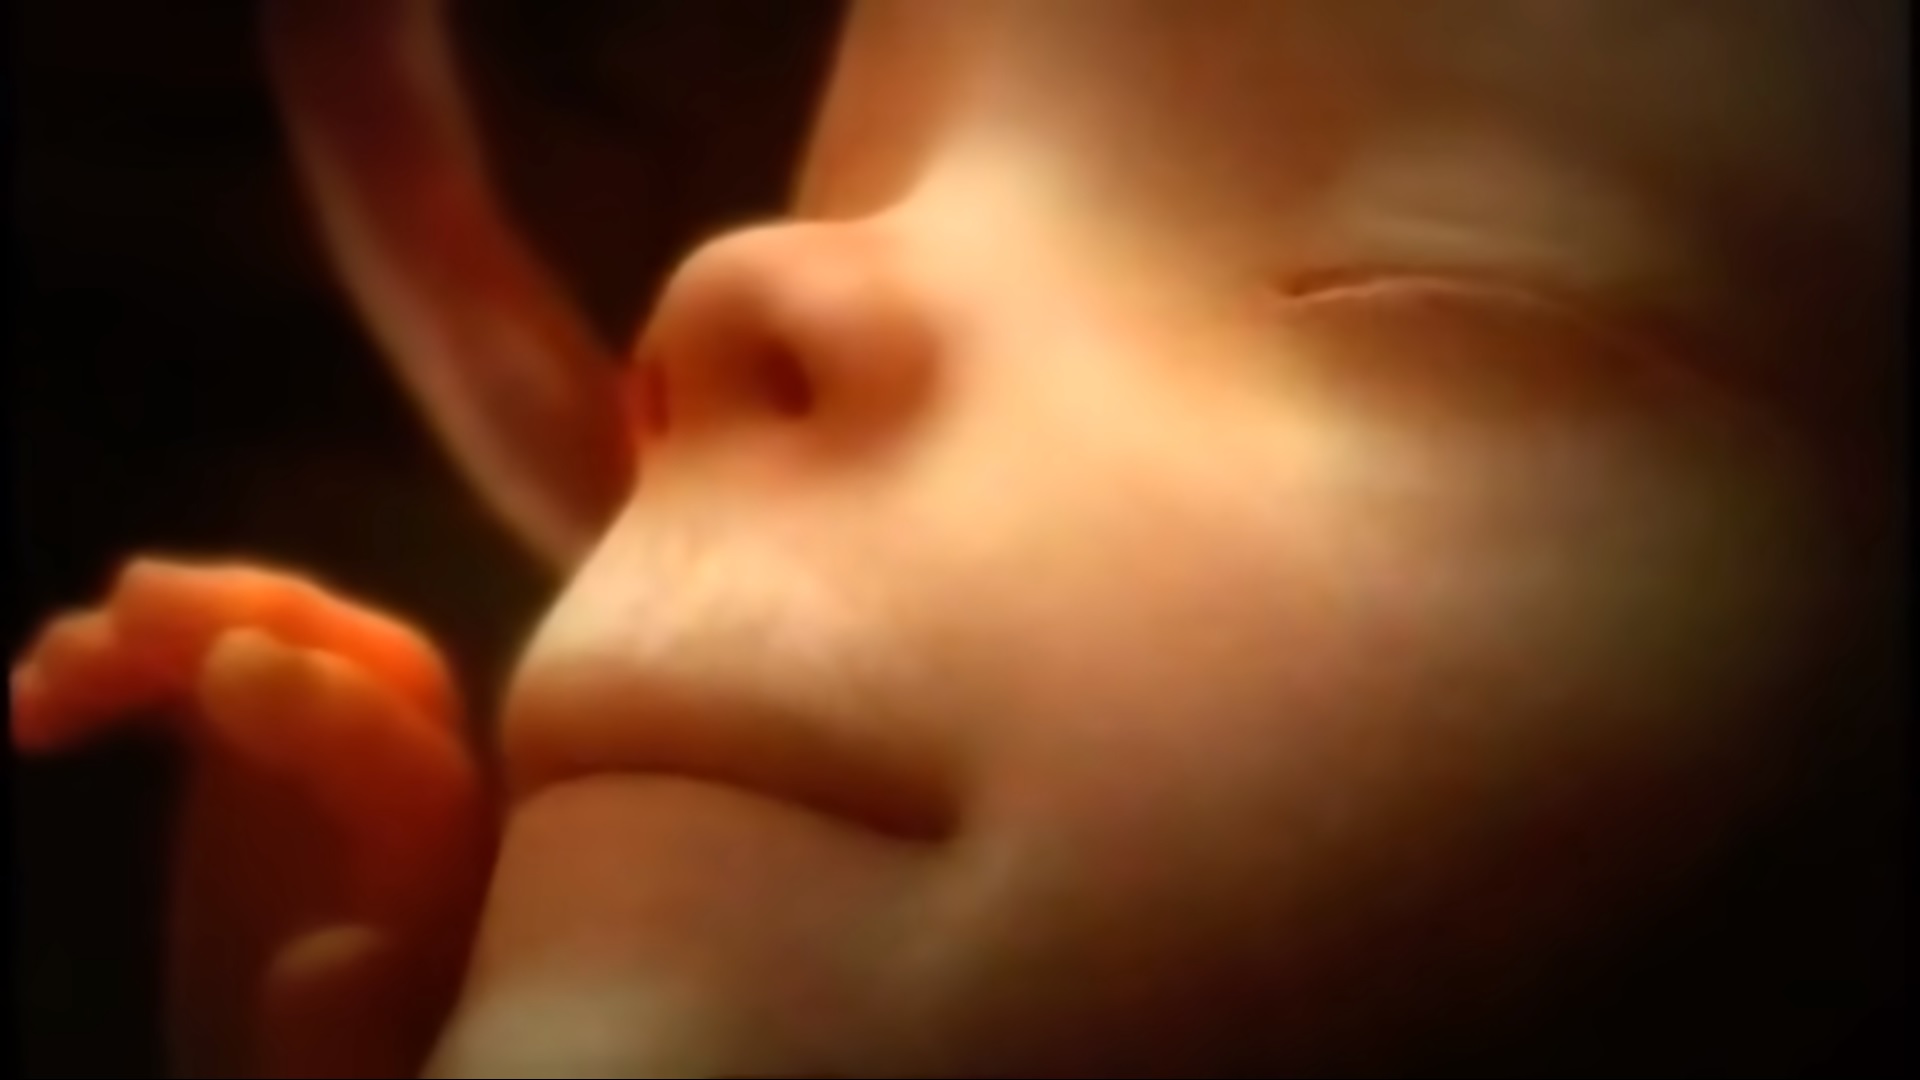 Így fejlődik ki a kisbaba az anya hasában foganástól a szülés pillanatáig -  Blikk Rúzs